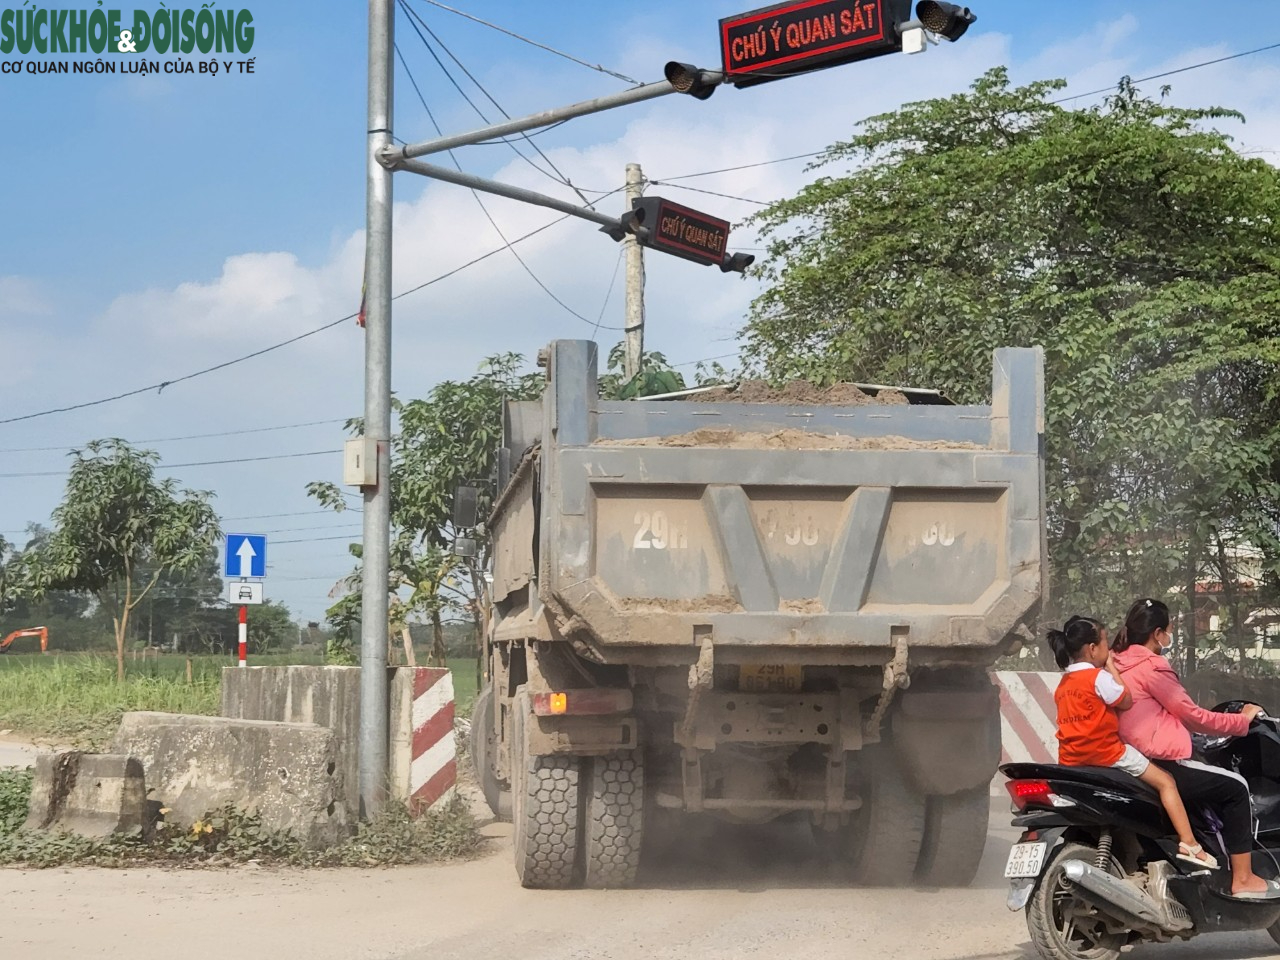 Học sinh Hà Nội ‘khóc thét’ trước cảnh hàng trăm xe tải hạng nặng chạy kín đường - Ảnh 12.